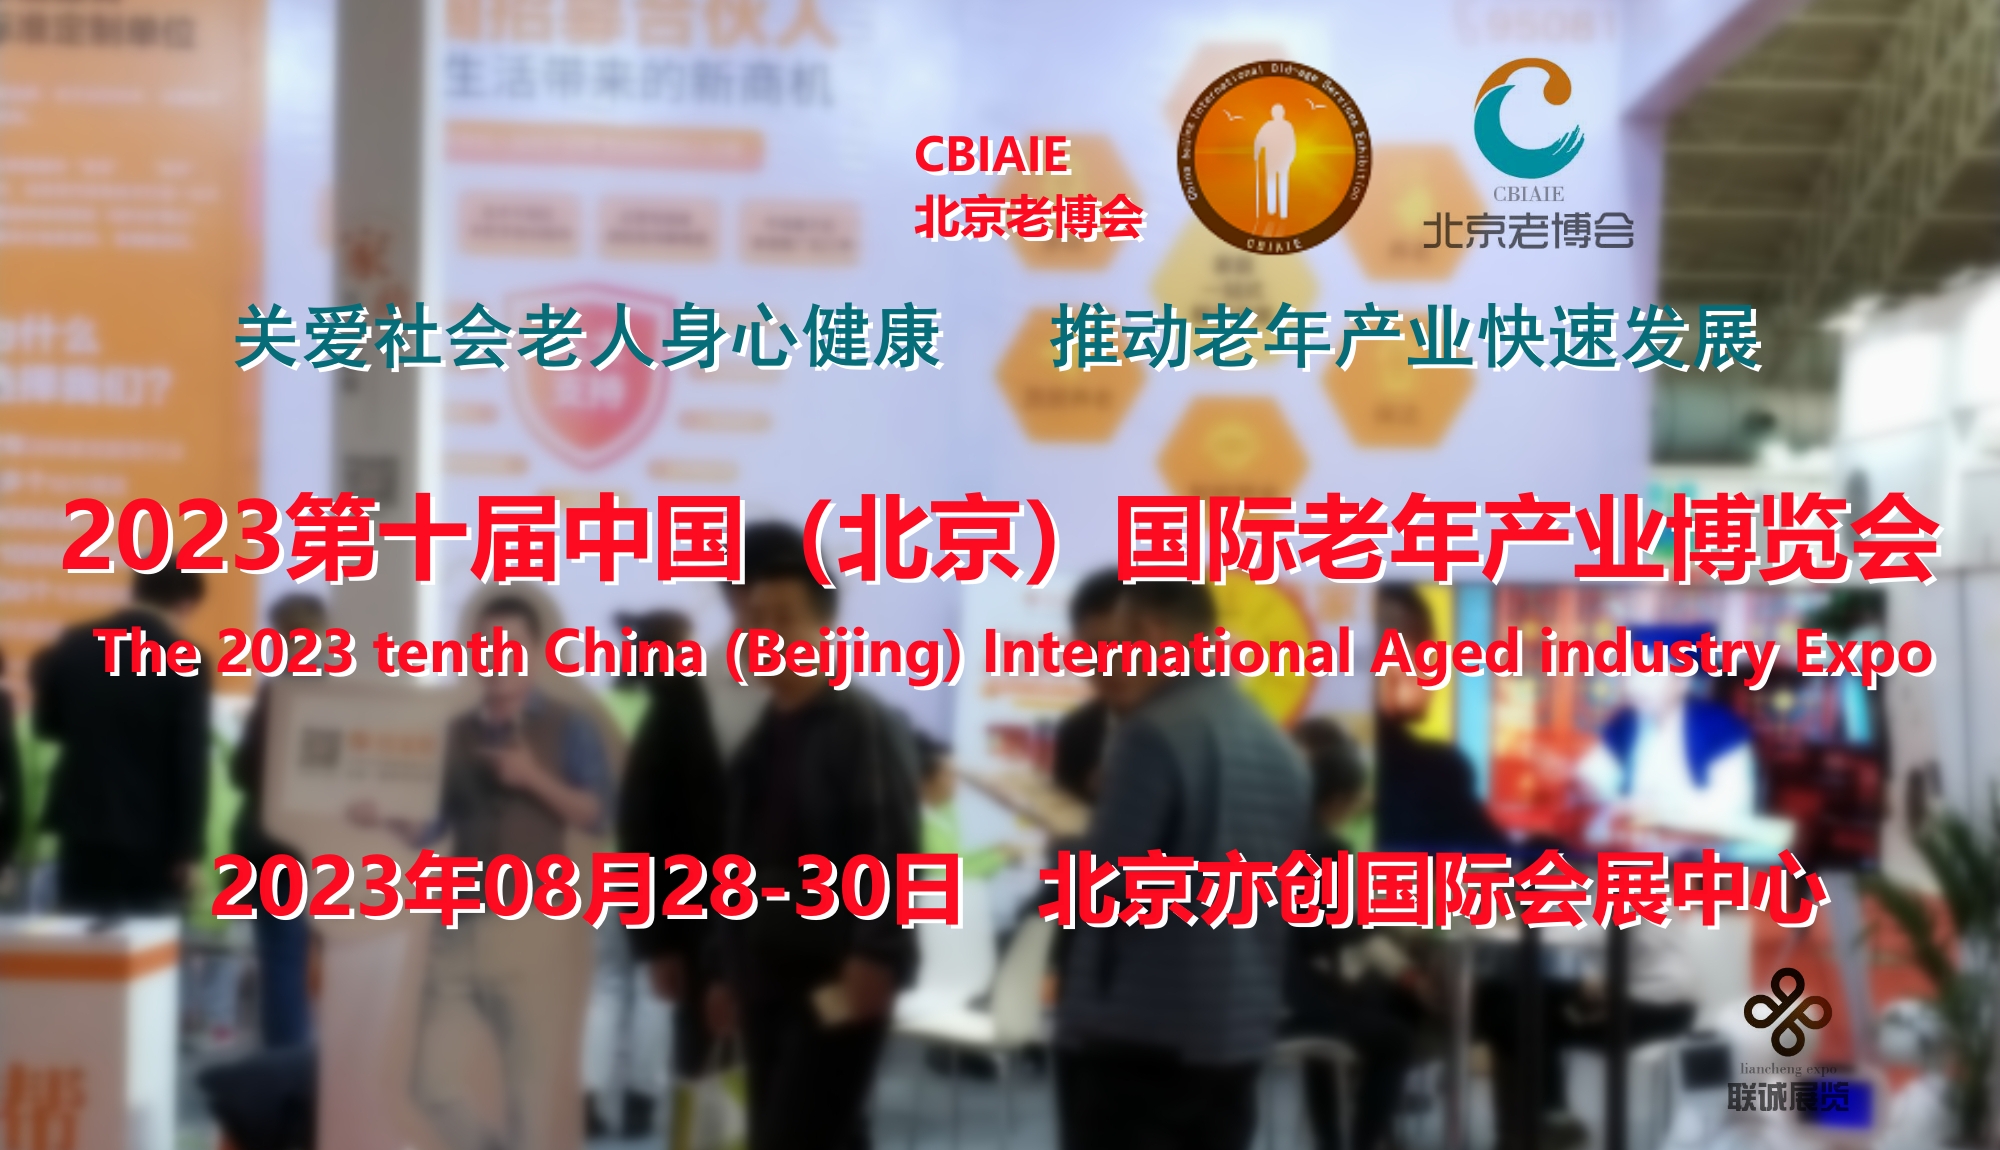 2023北京老博会（CBIAIE）进入展位预订高峰